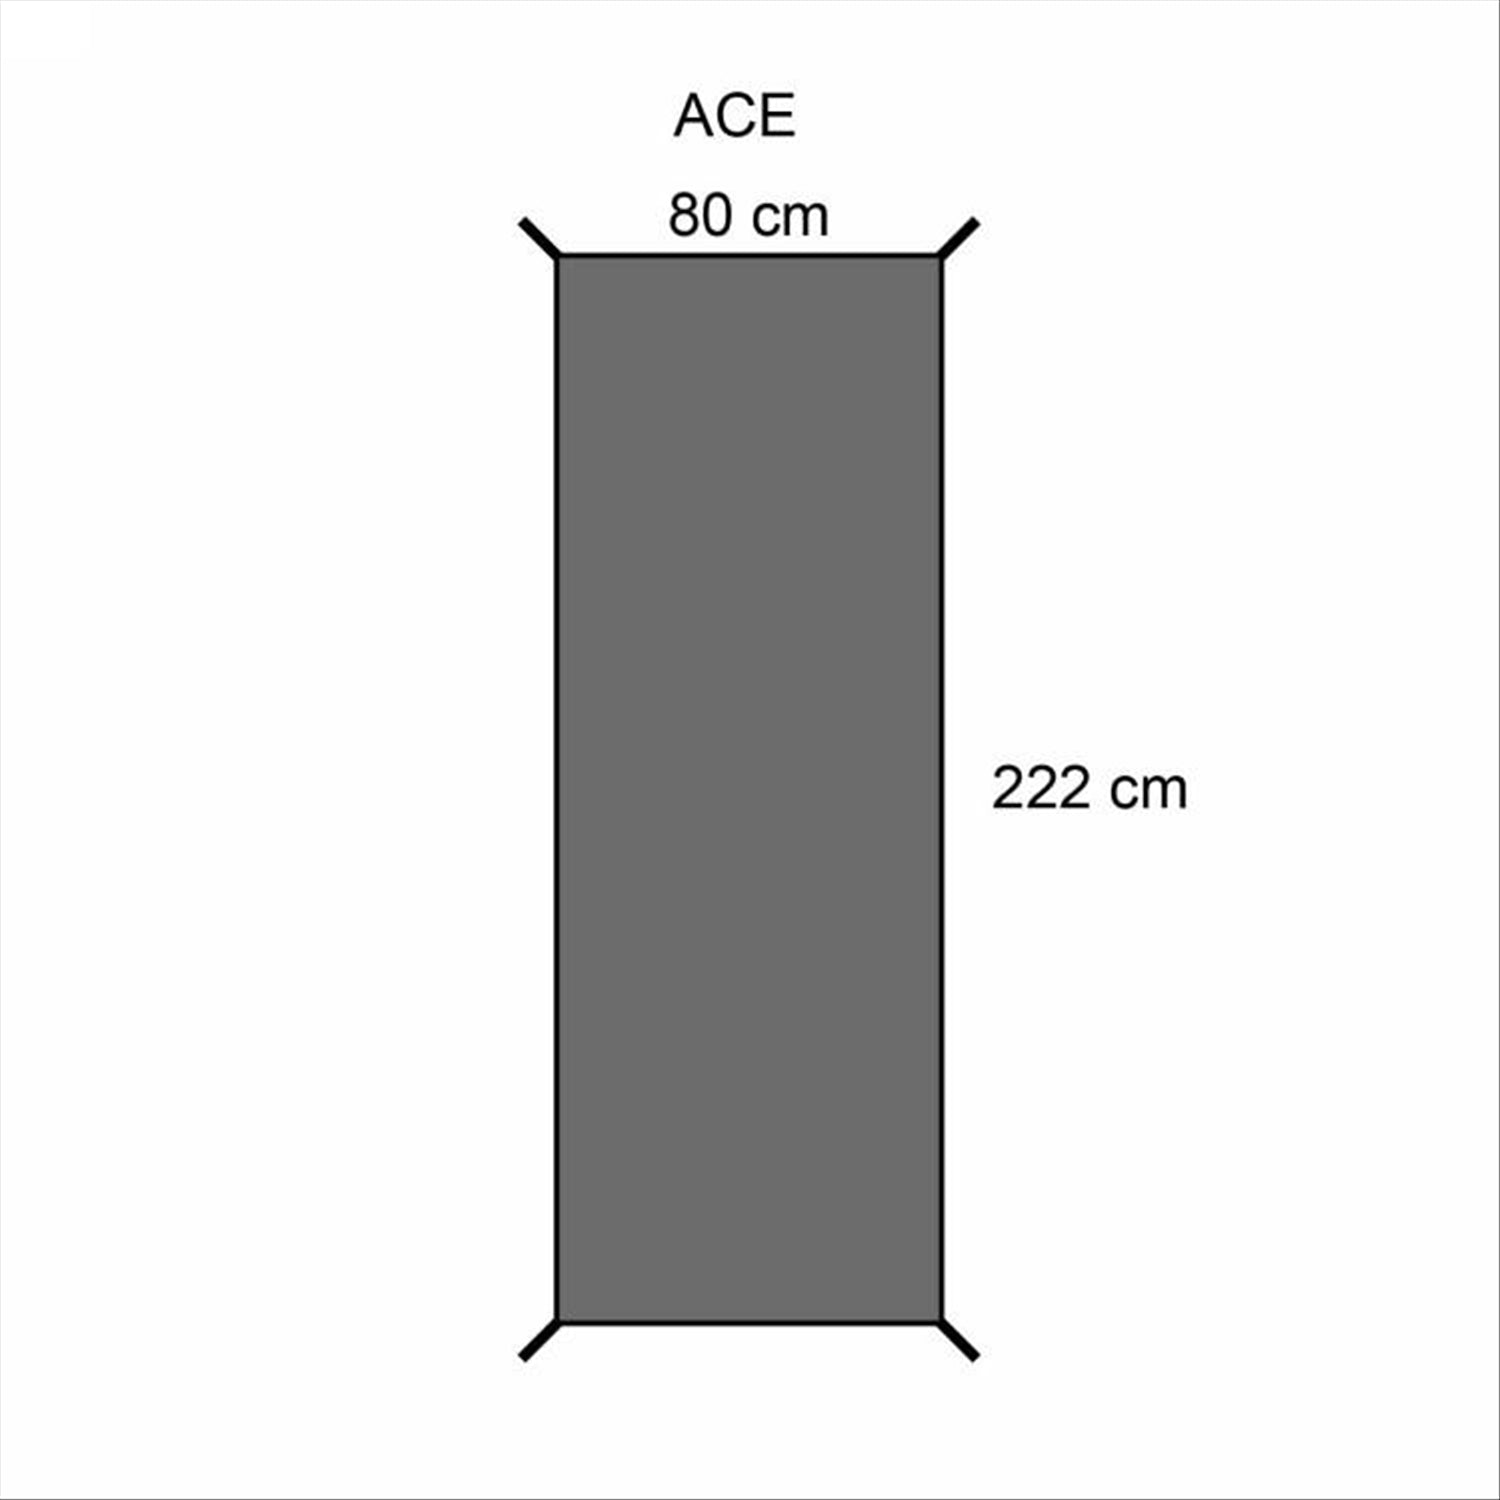 Orson Orson Ace 1 Tent Groundsheet - 80 x 220cm